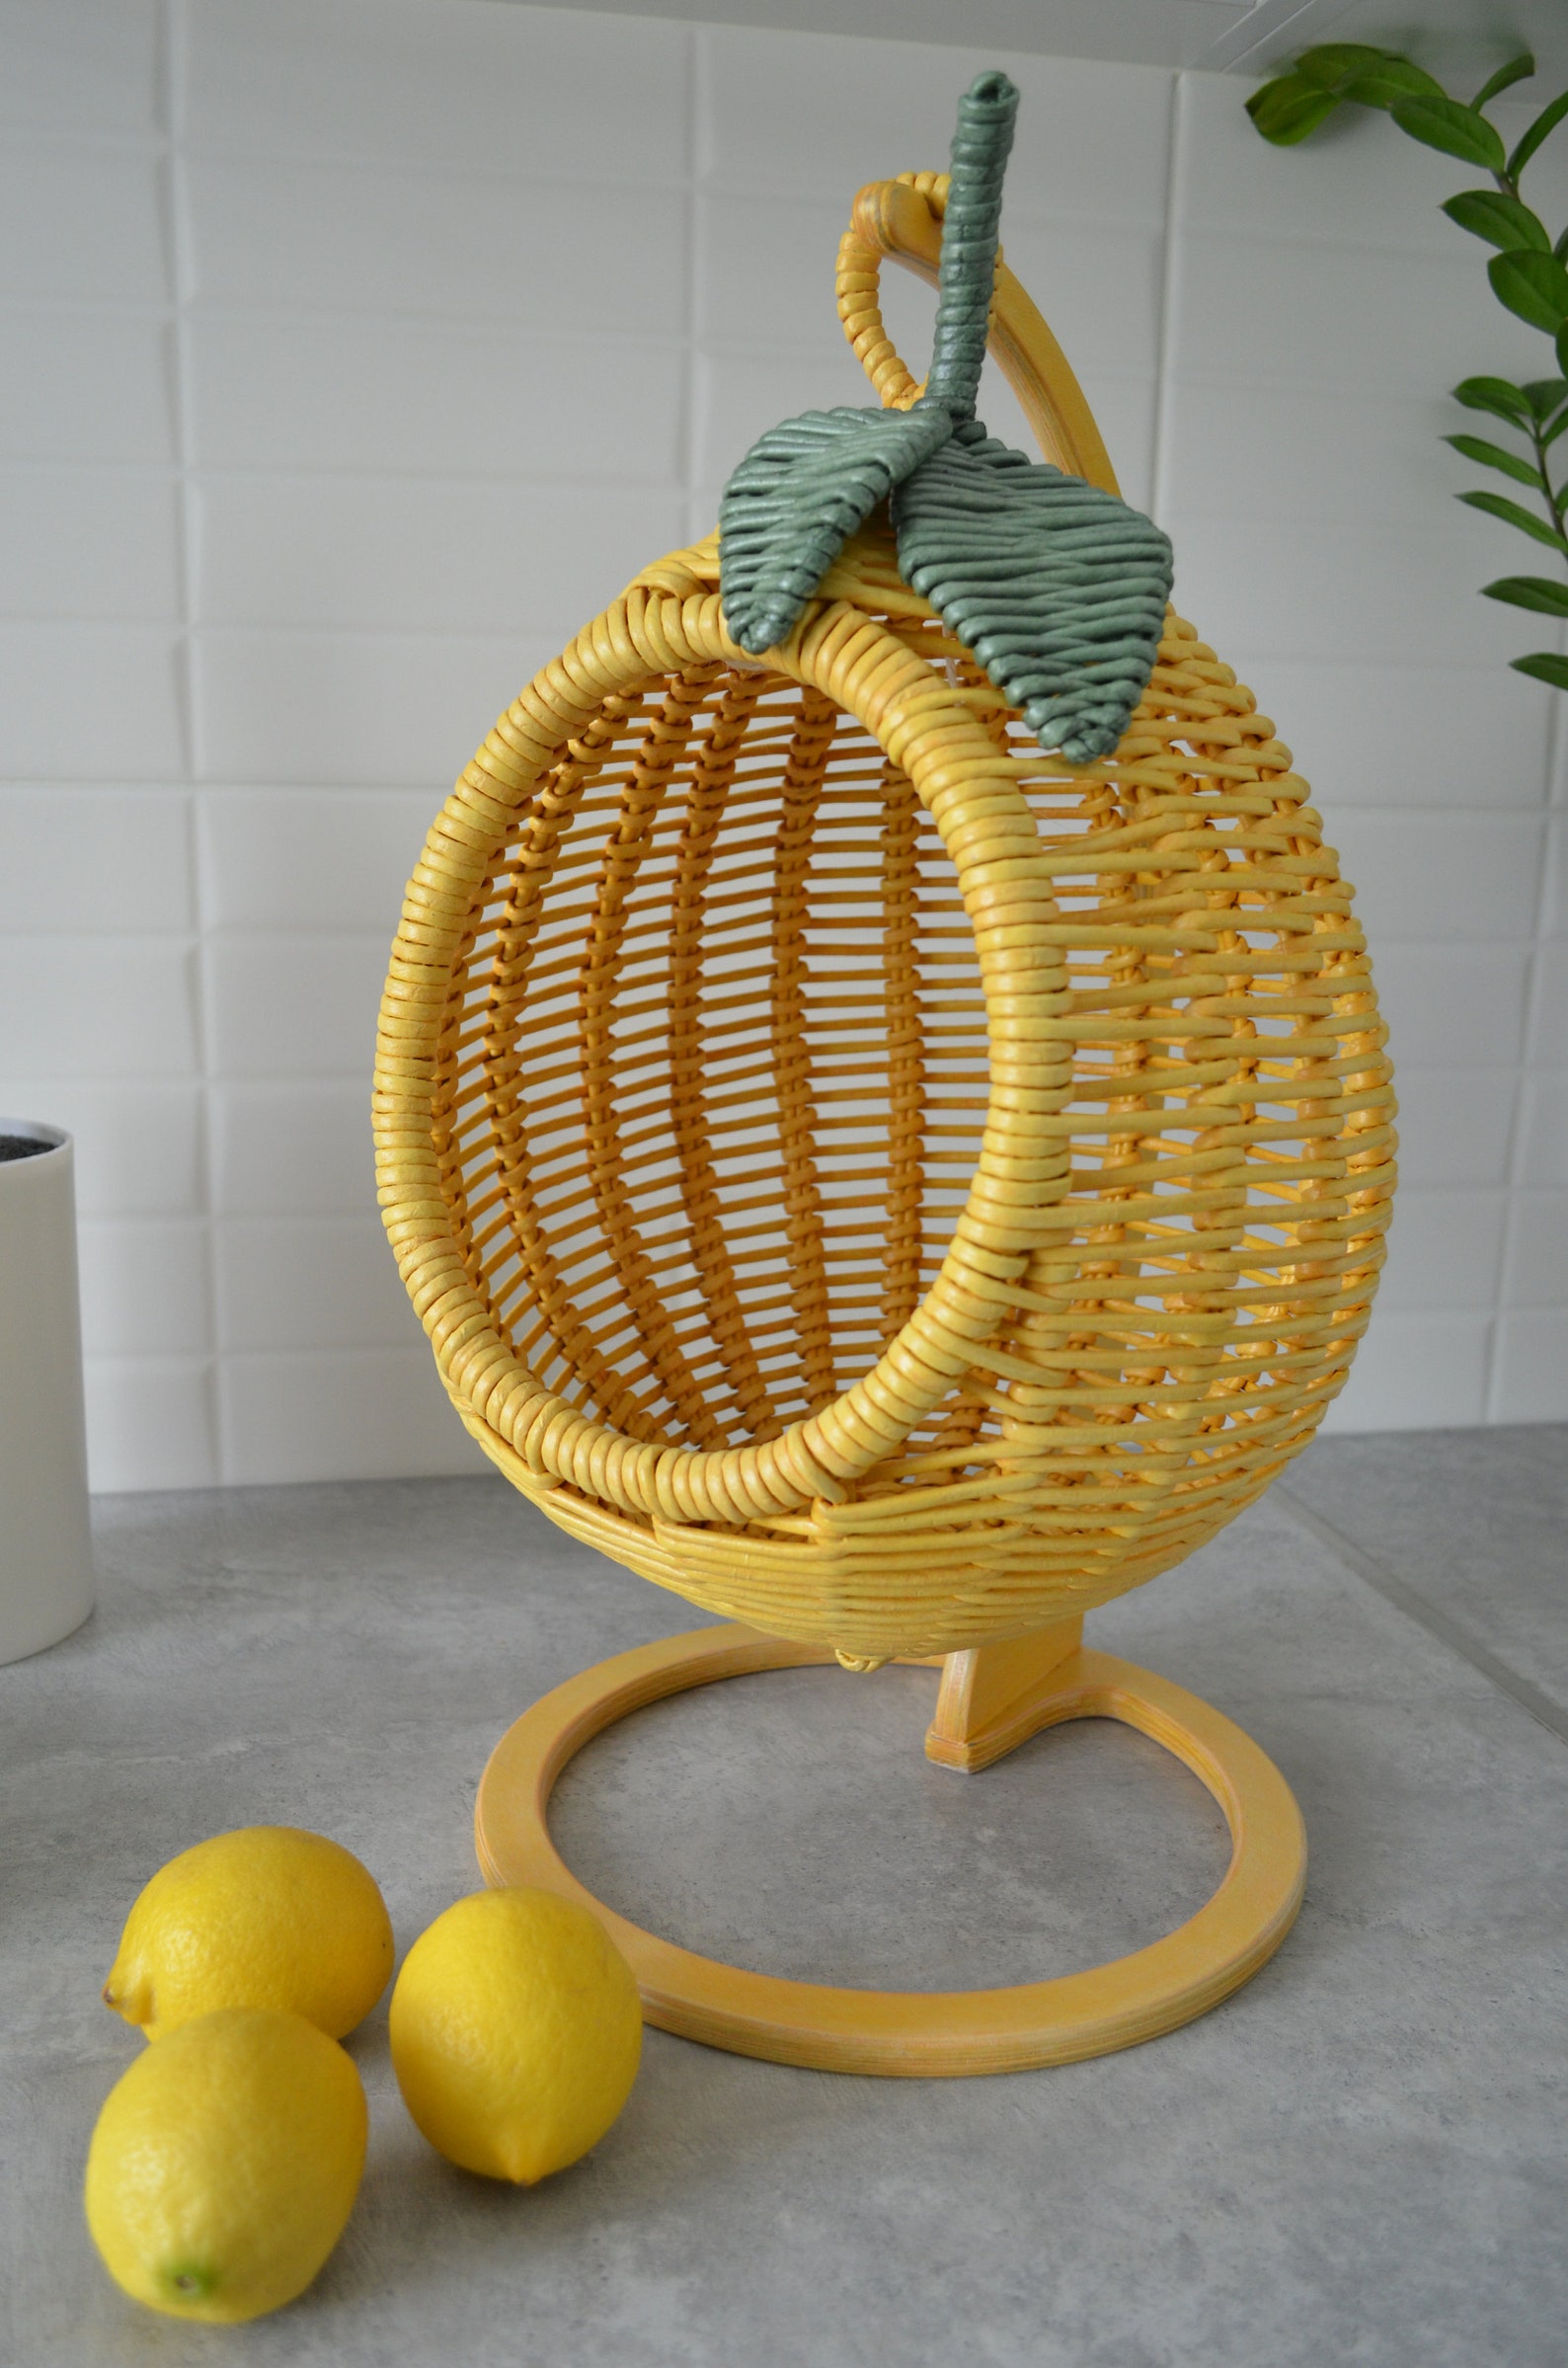 Hanging Basket for Storing Fruits Fruit Basket in the Shape of | Etsy